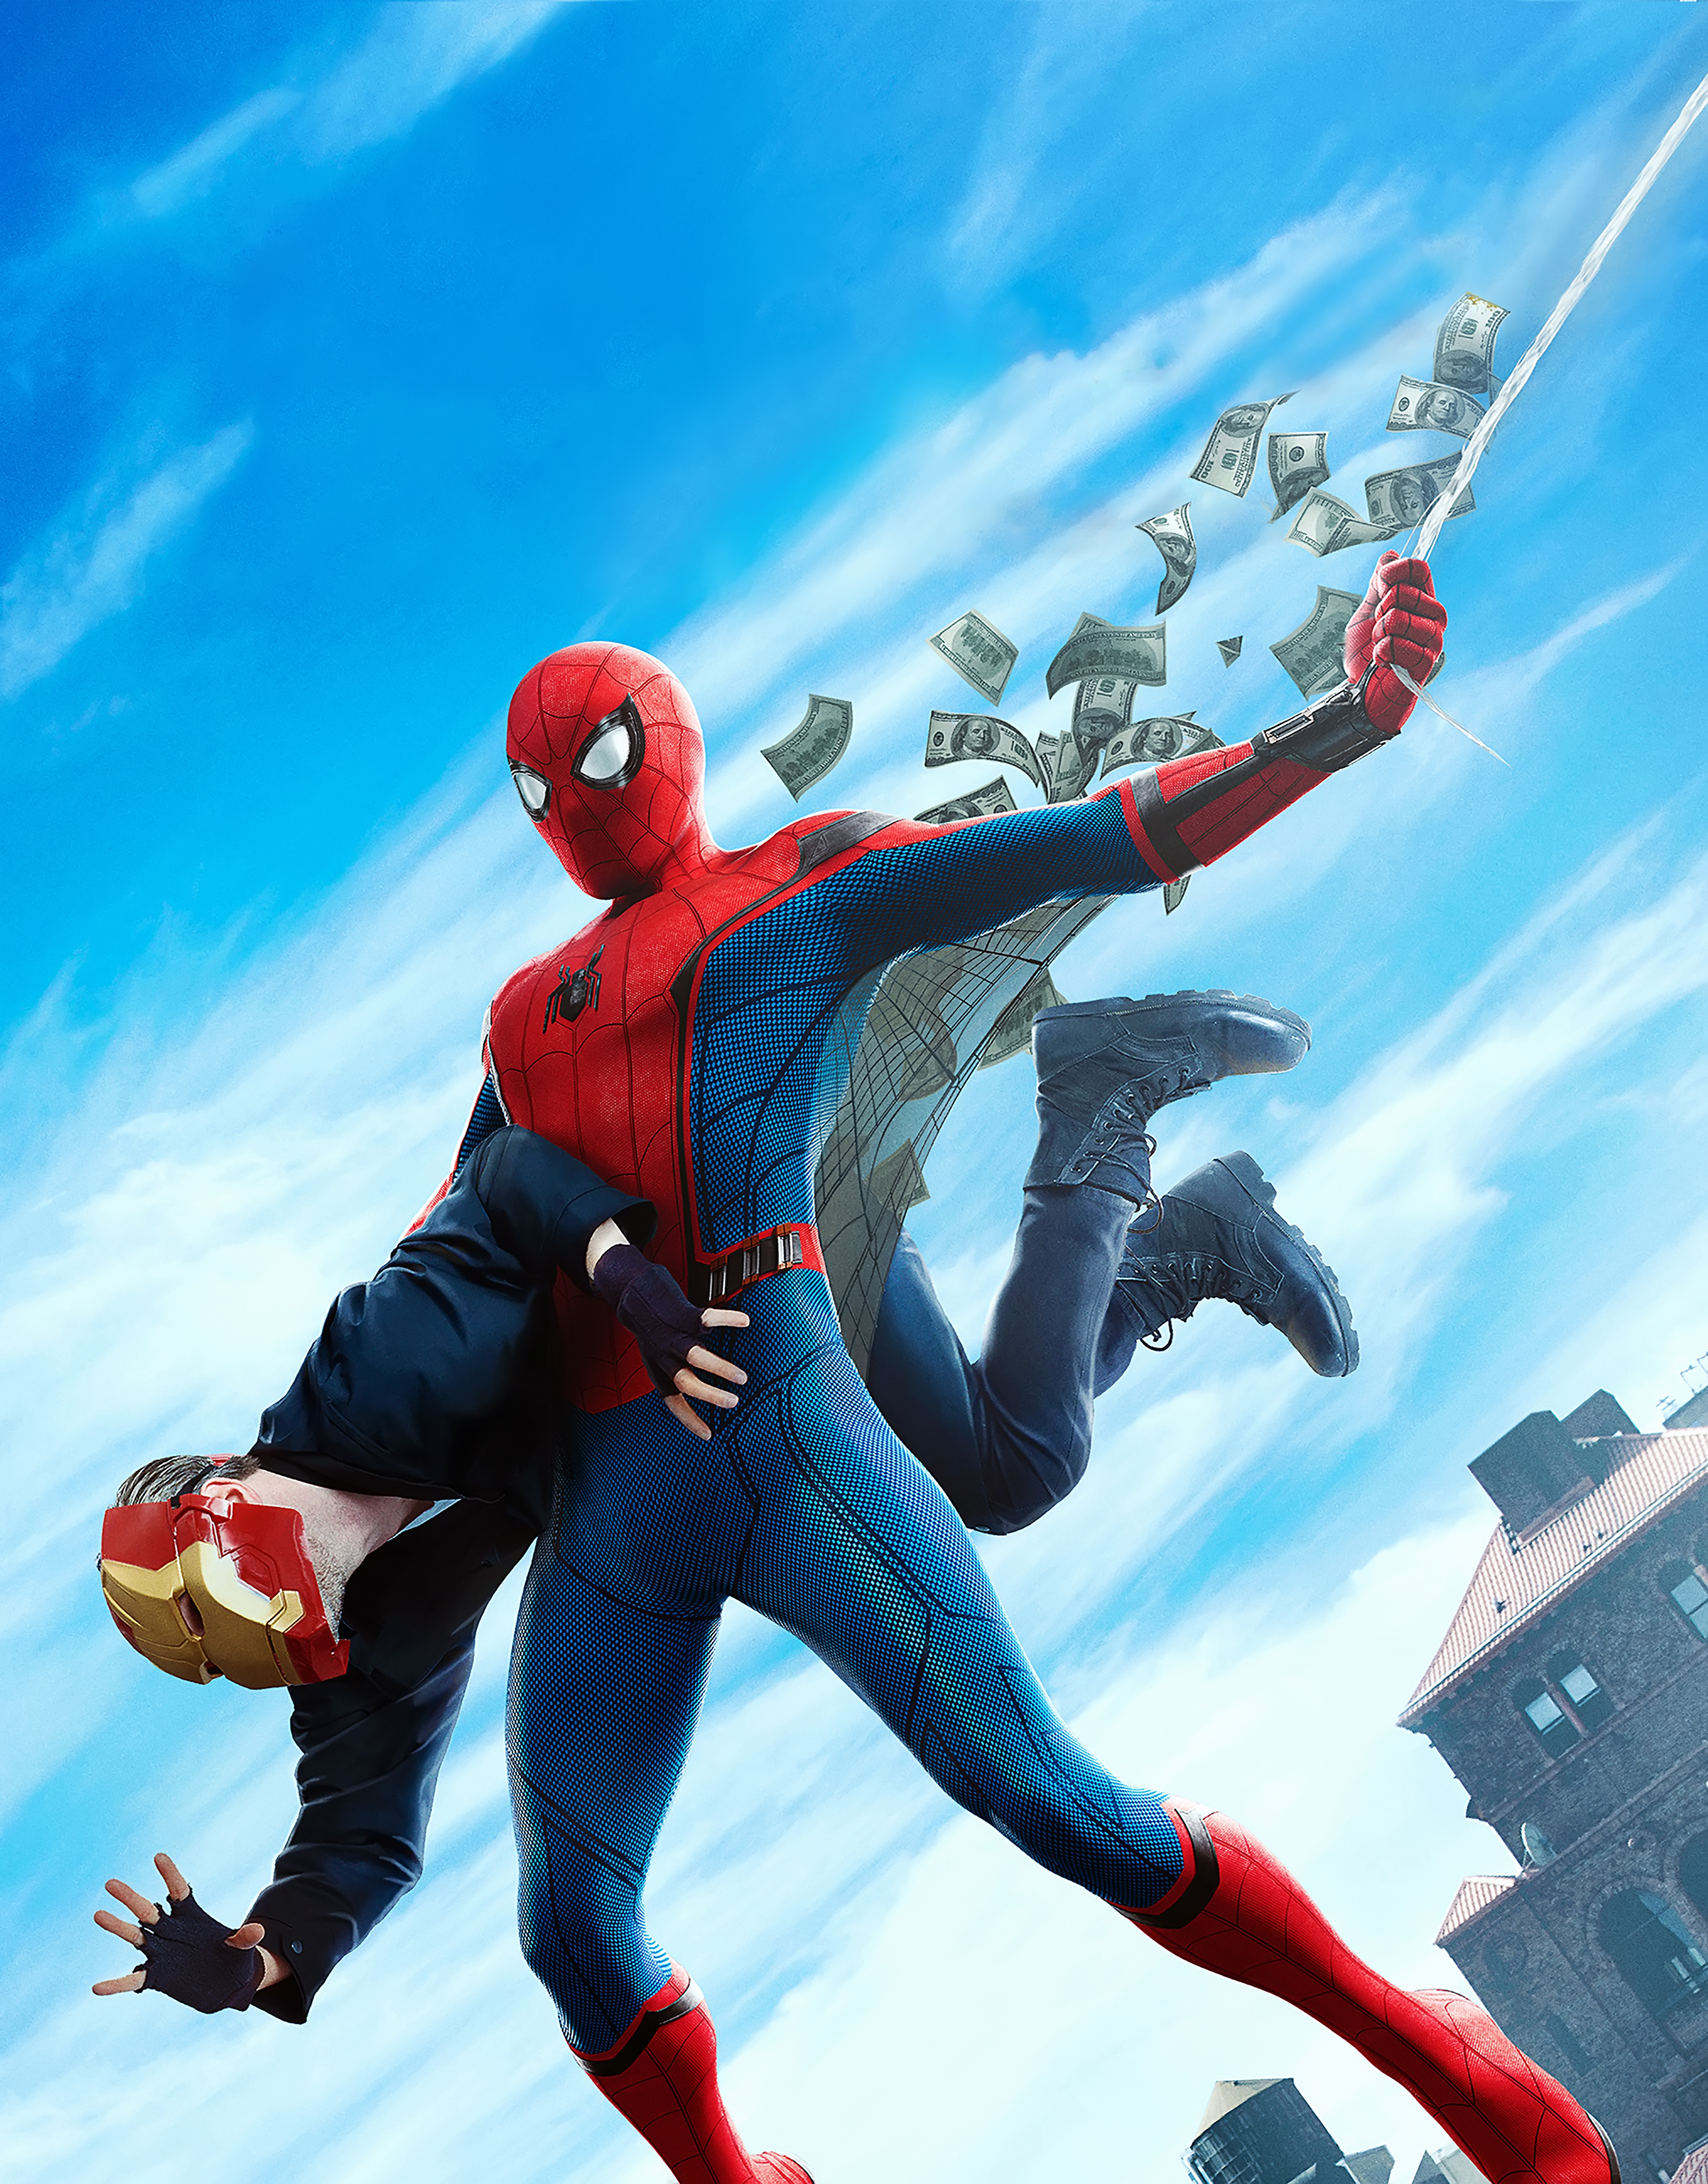 spiderman homecoming fondos de pantalla hd,hombre araña,superhéroe,personaje de ficción,deporte extremo,héroe